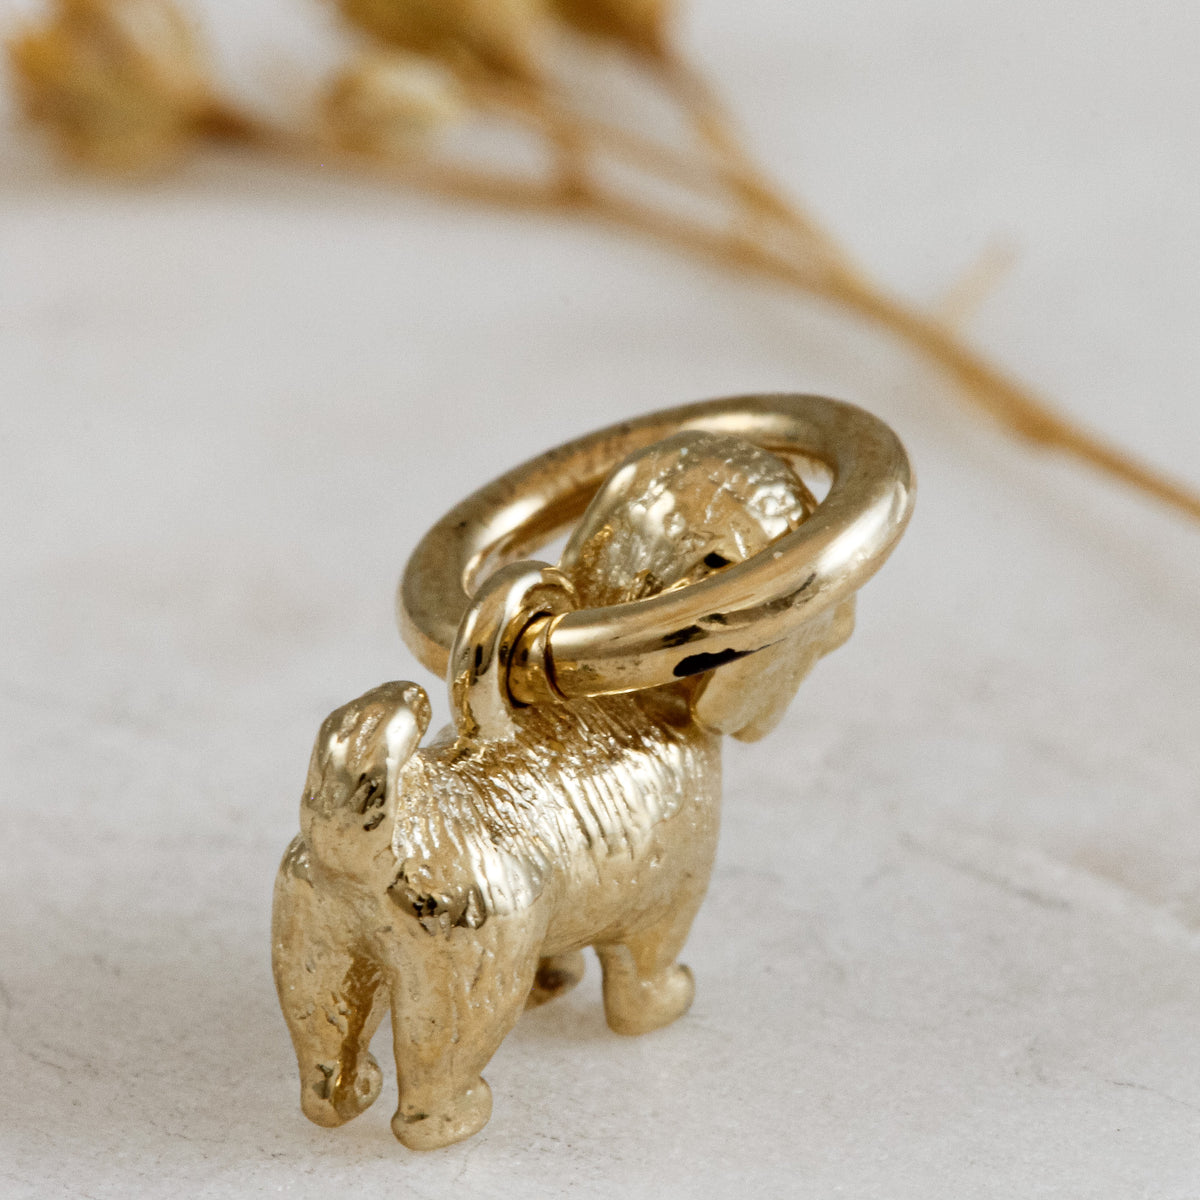 shih-tzu solid gold dog charm for a necklace or bracelet